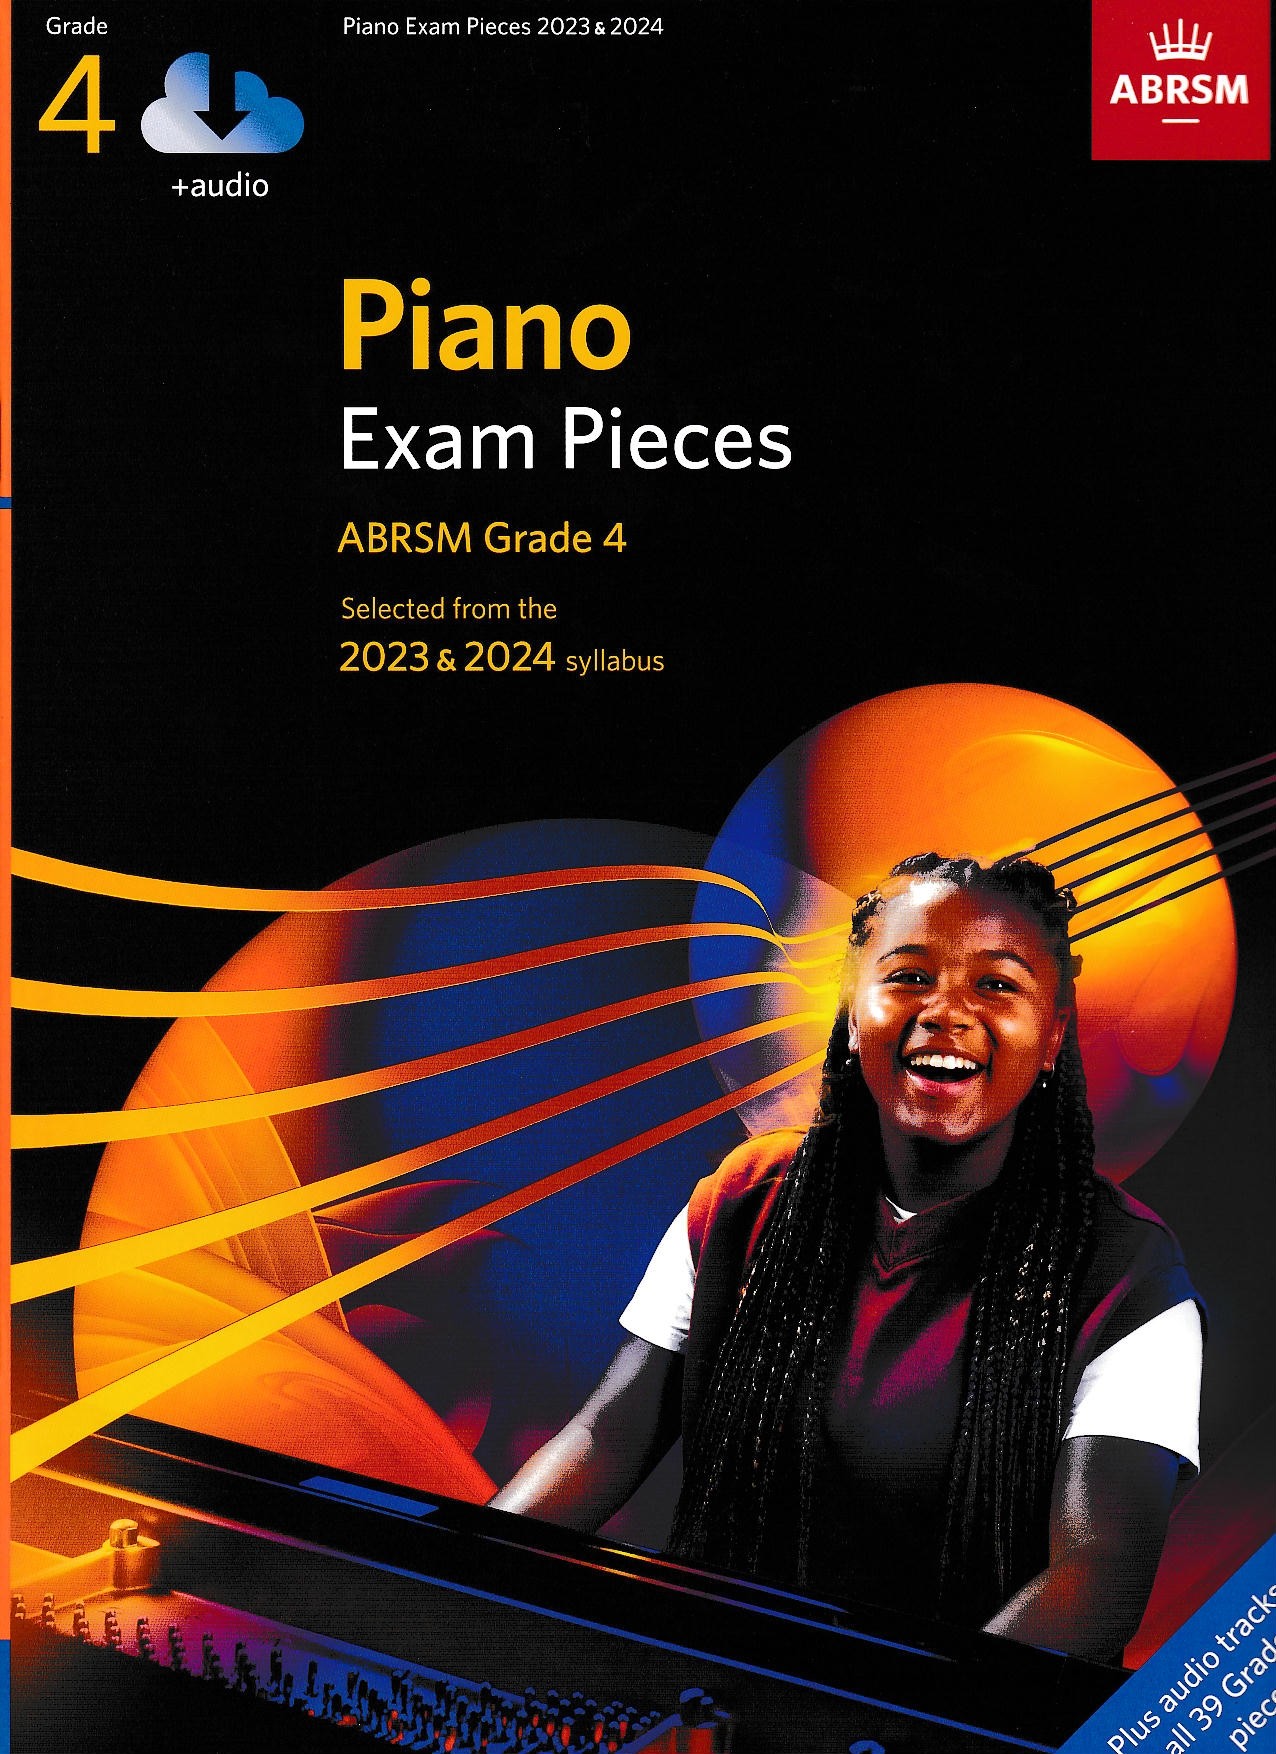 ABRSM Piano Exam Pieces 2023-2024 Book + Audio - Grade 4